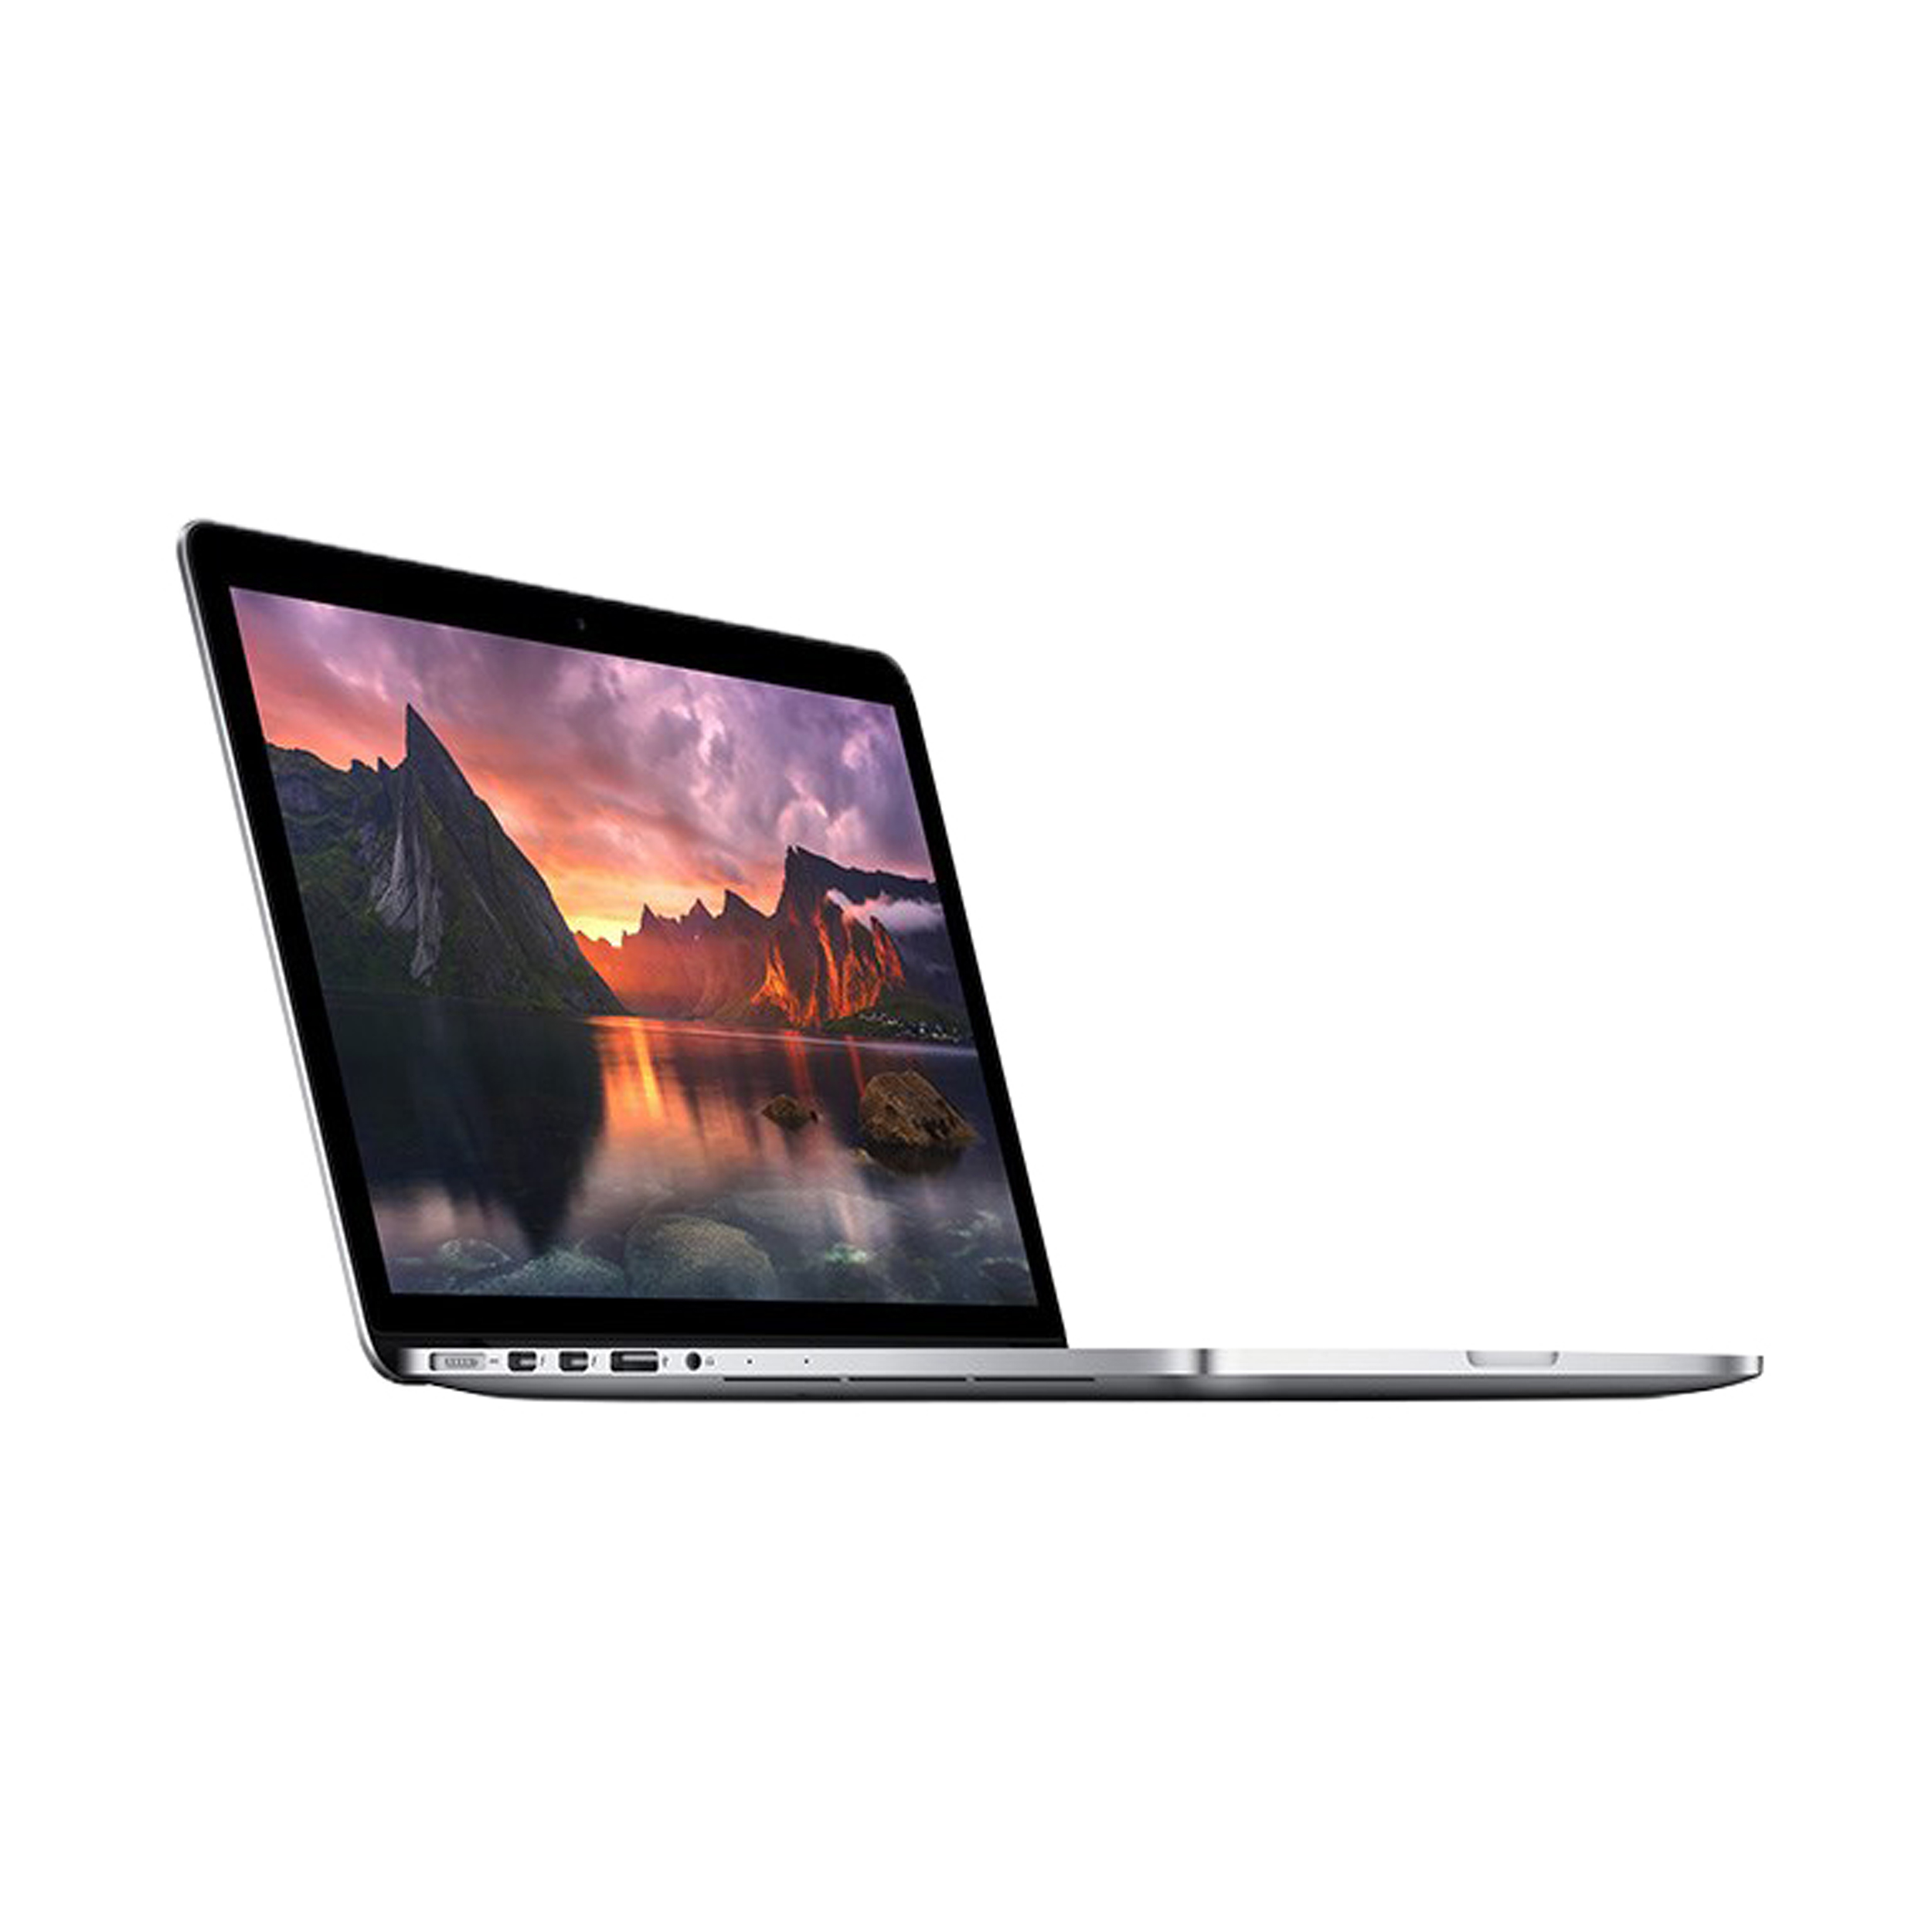 لپ تاپ 13 اینچی اپل مدل MacBook Pro ME864 2013 با صفحه نمایش رتینا